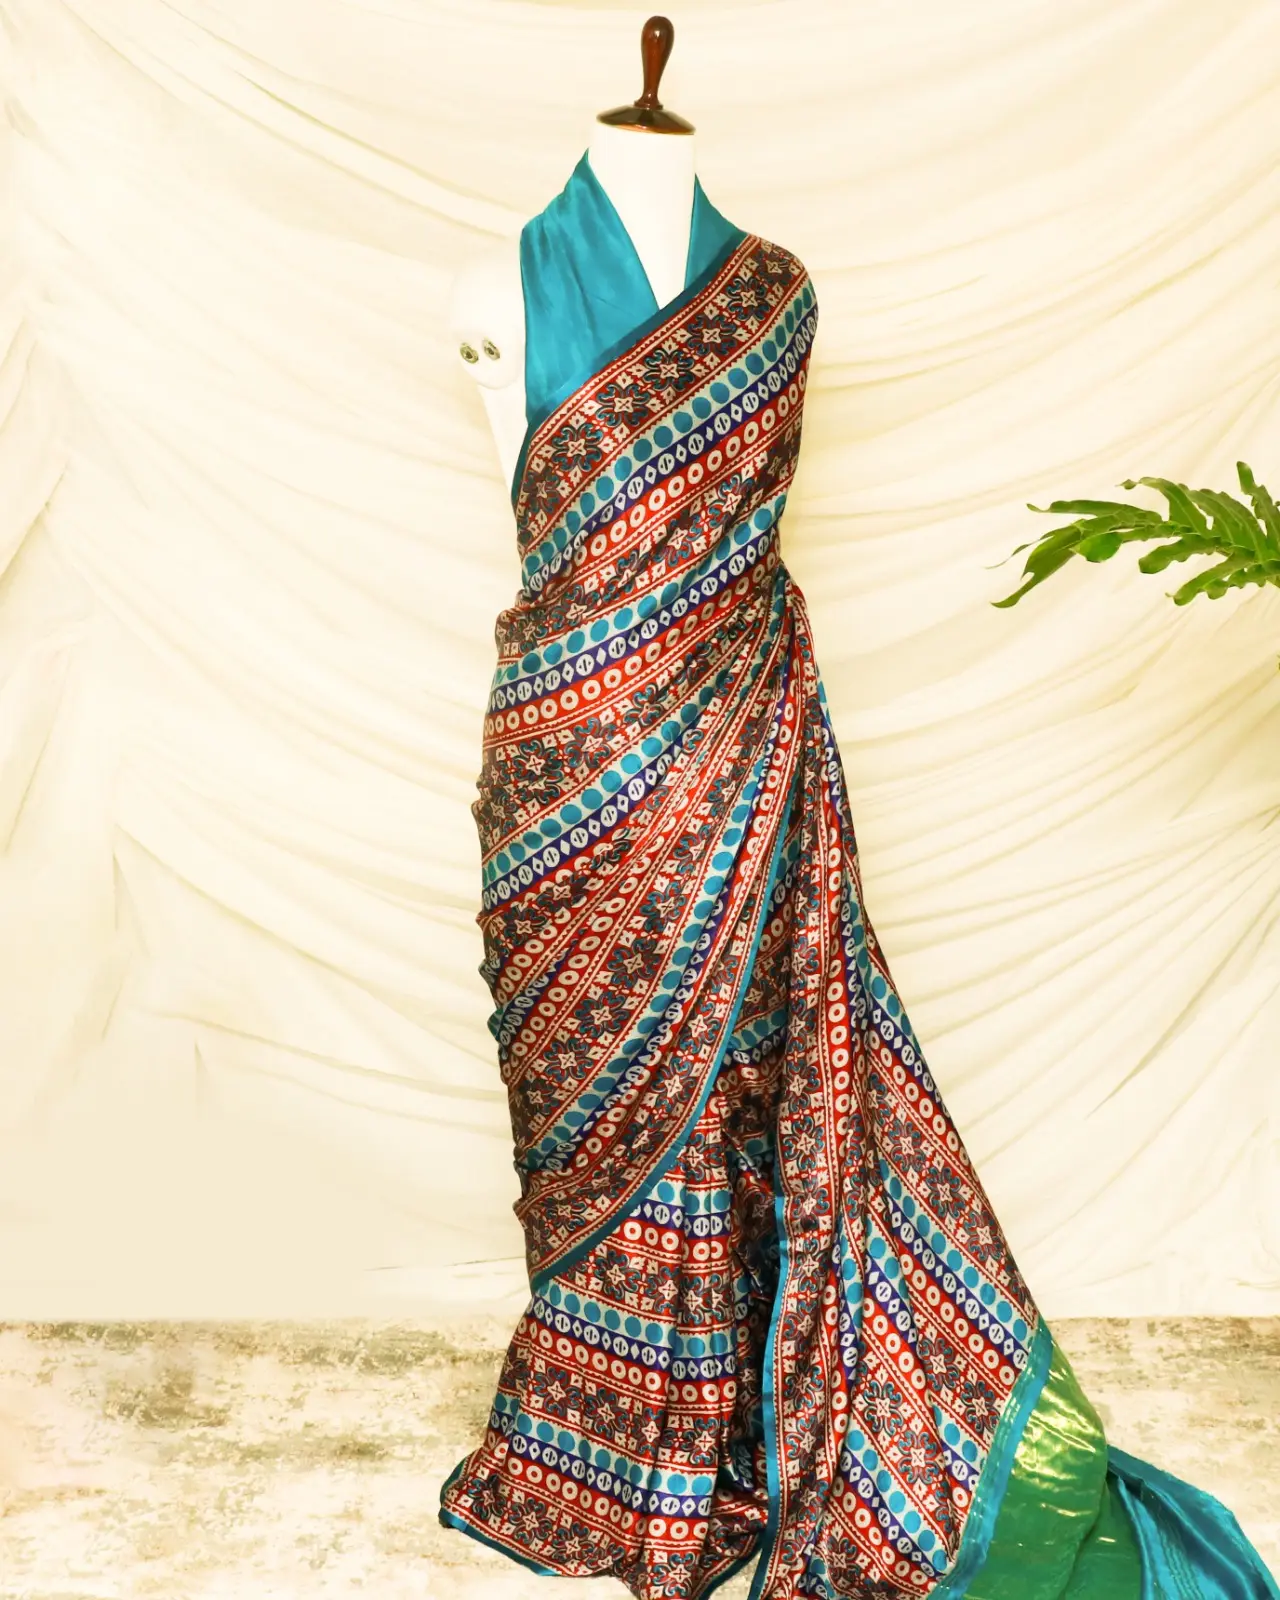 Venda quente Mais Recente Design Mulheres Chiffon Impresso Saree Com Bordados Pesados Trabalho Confortável Tecido Saree da Índia